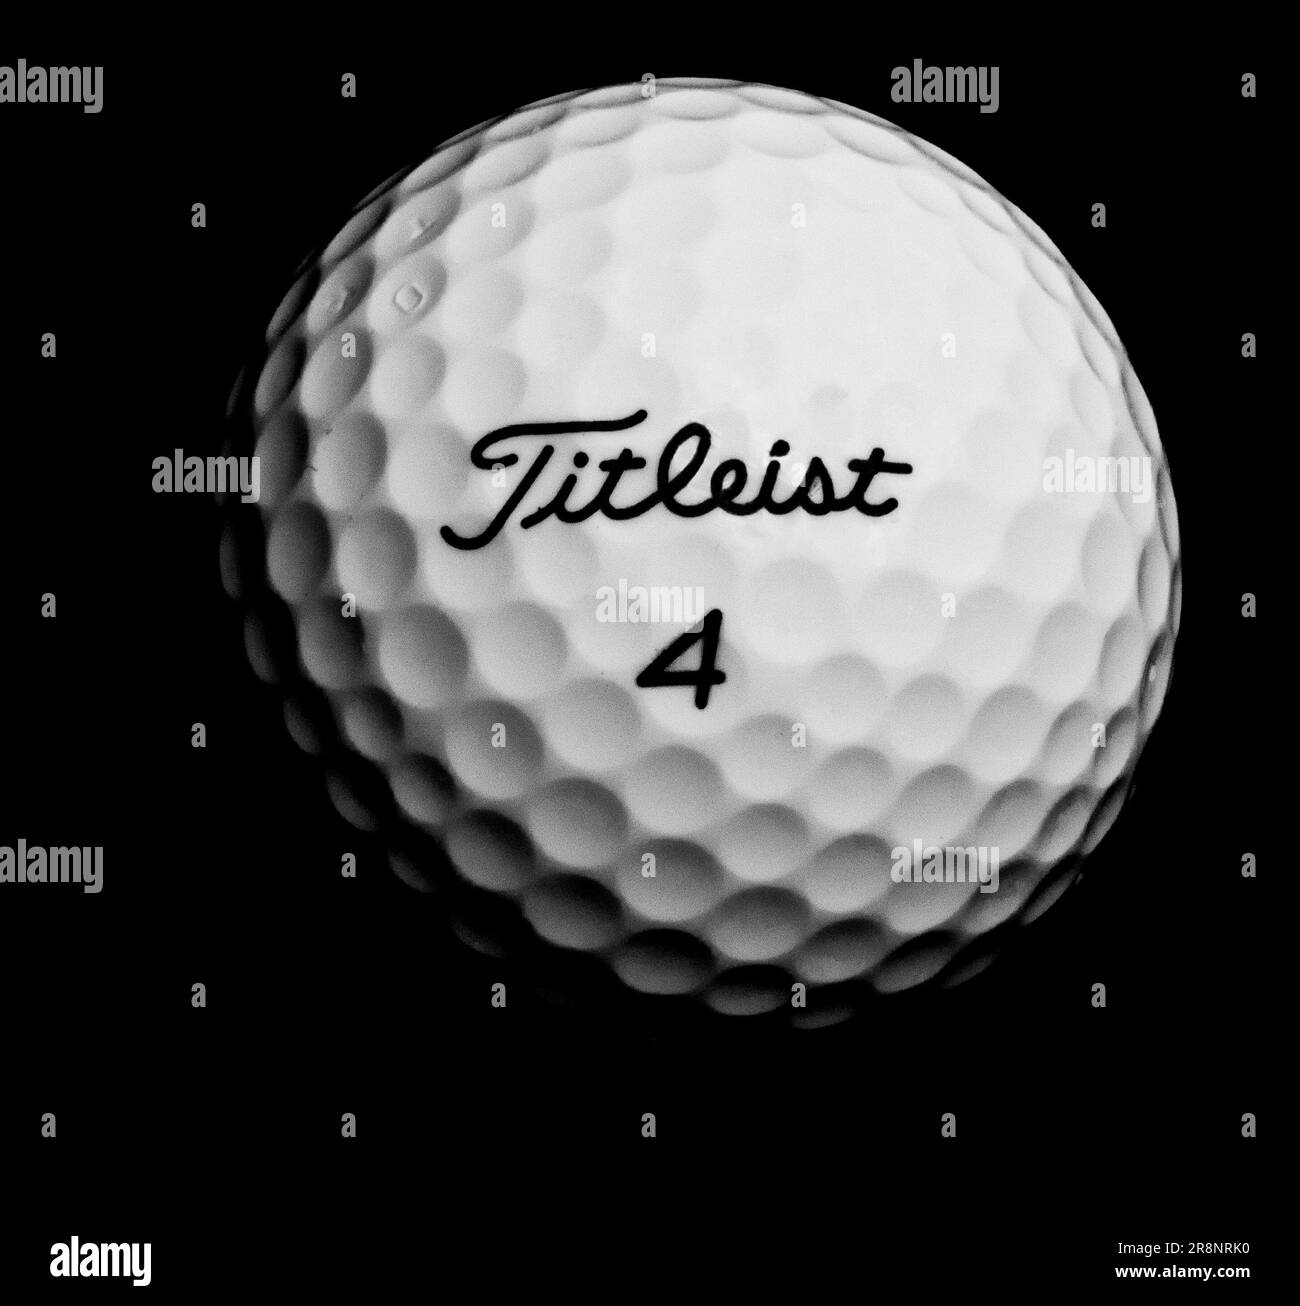 Ballon de golf Titleist marqué n°4 sur fond plat, Titleist est la propriété d'Acushnet et basé dans le Massachusetts, Etats-Unis; noir et blanc (noir et blanc) Banque D'Images